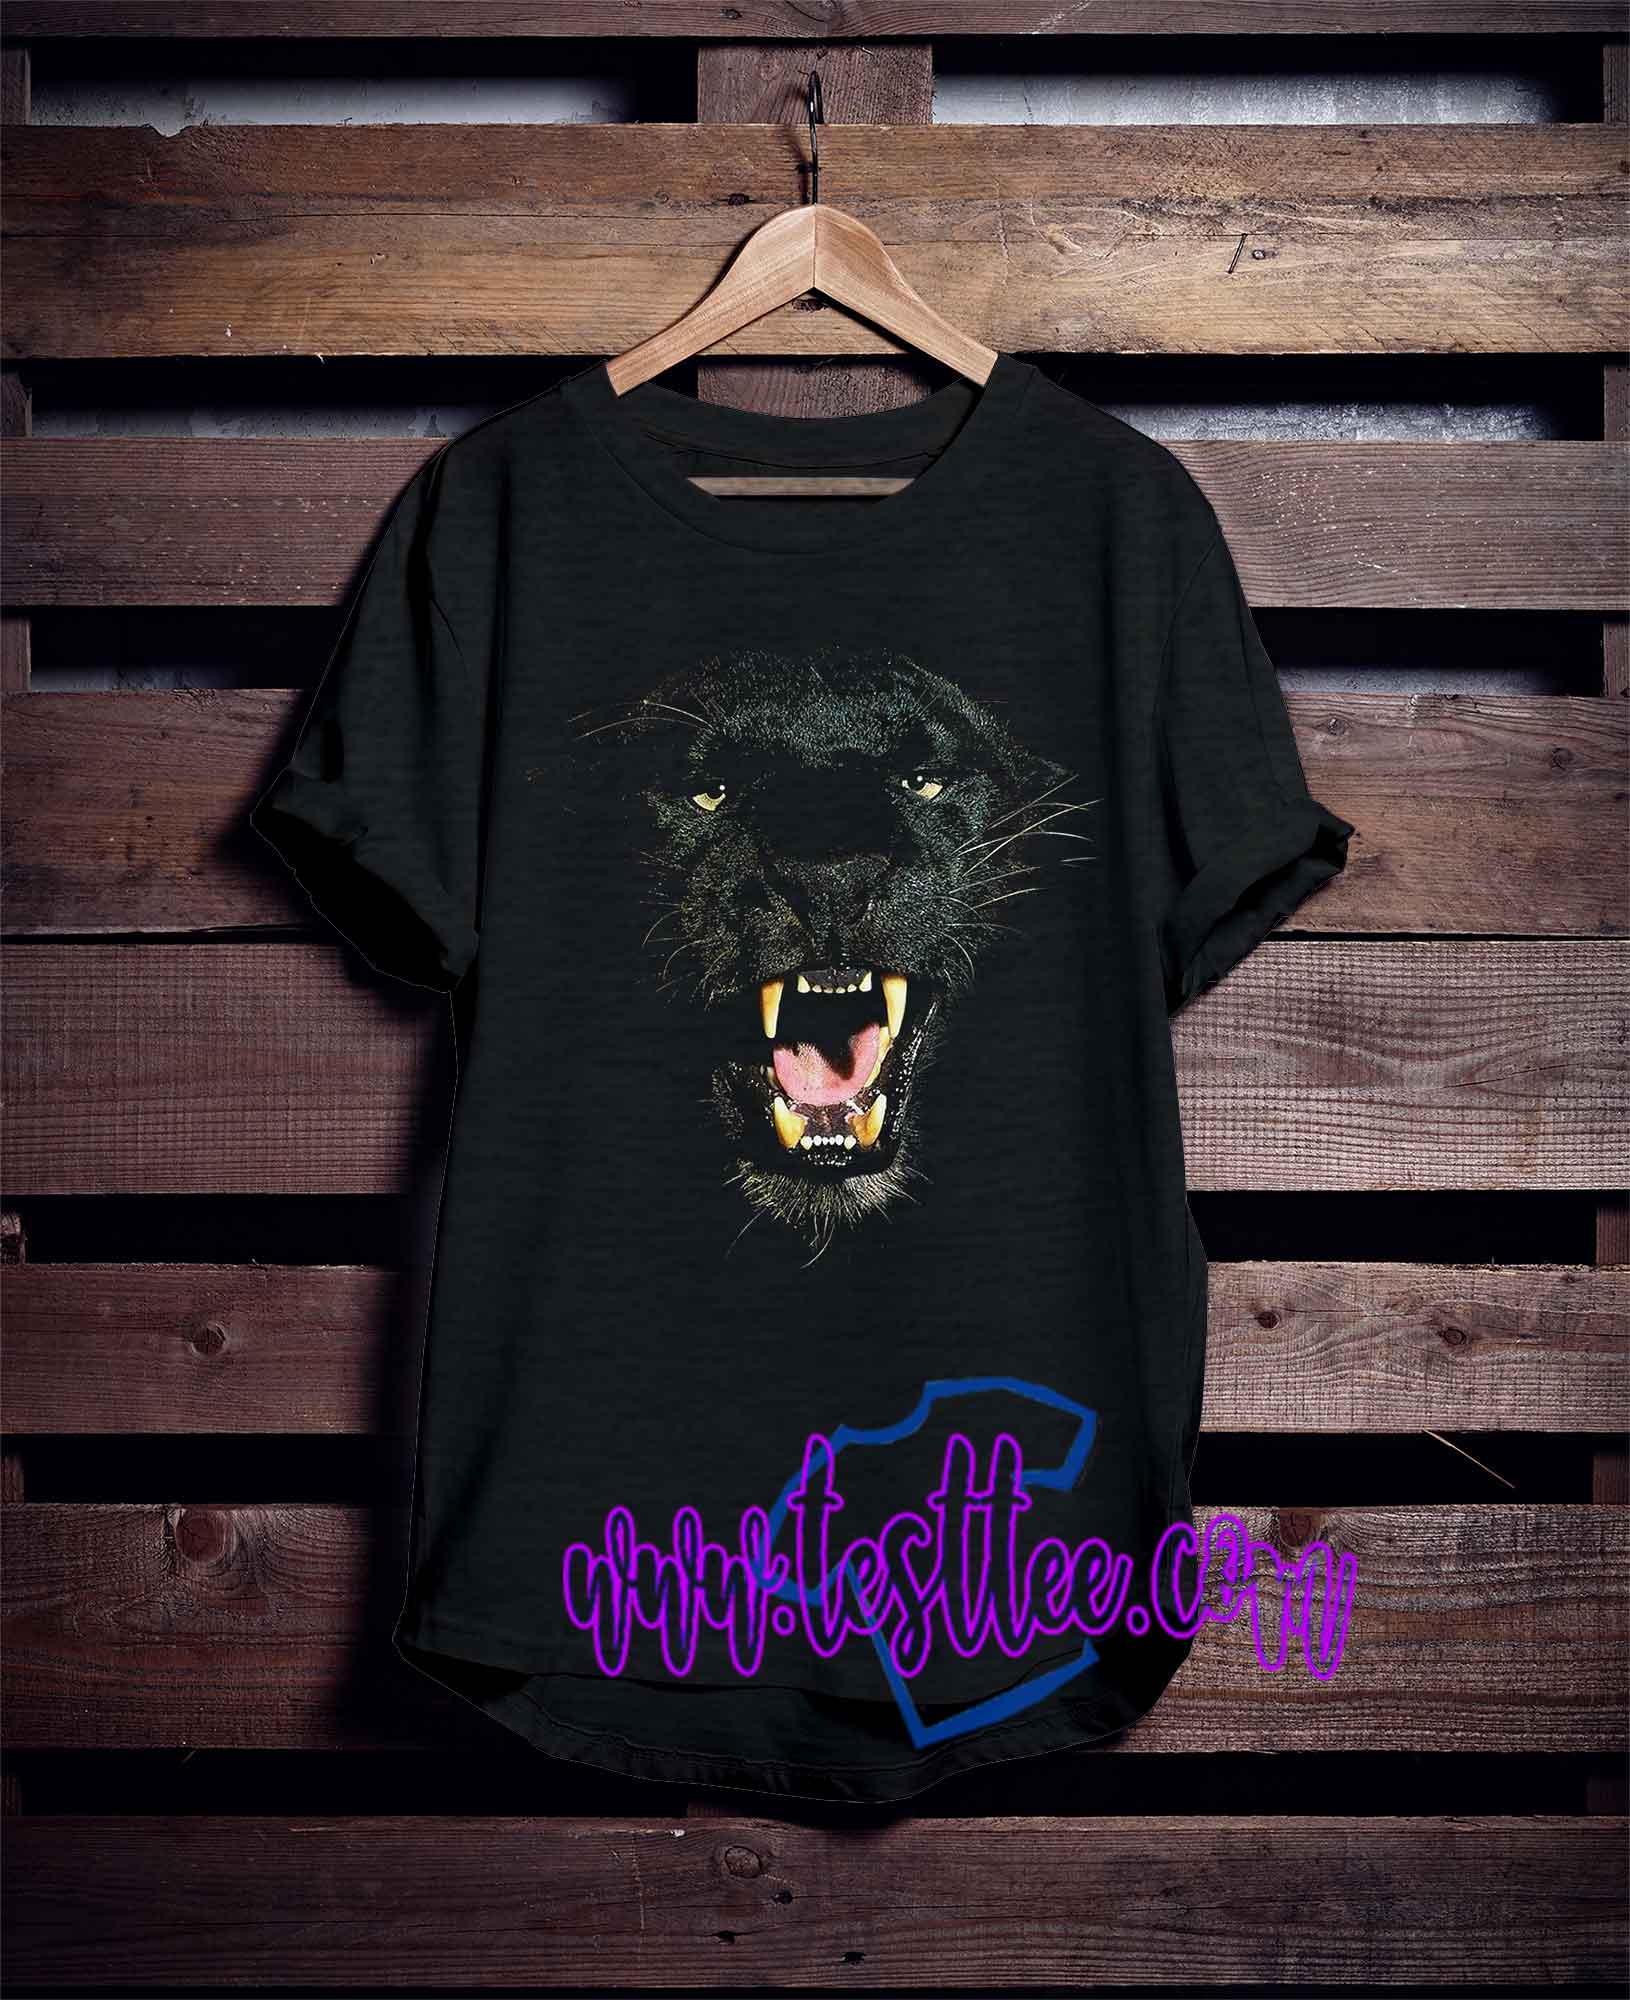 black panther t shirt roblox free